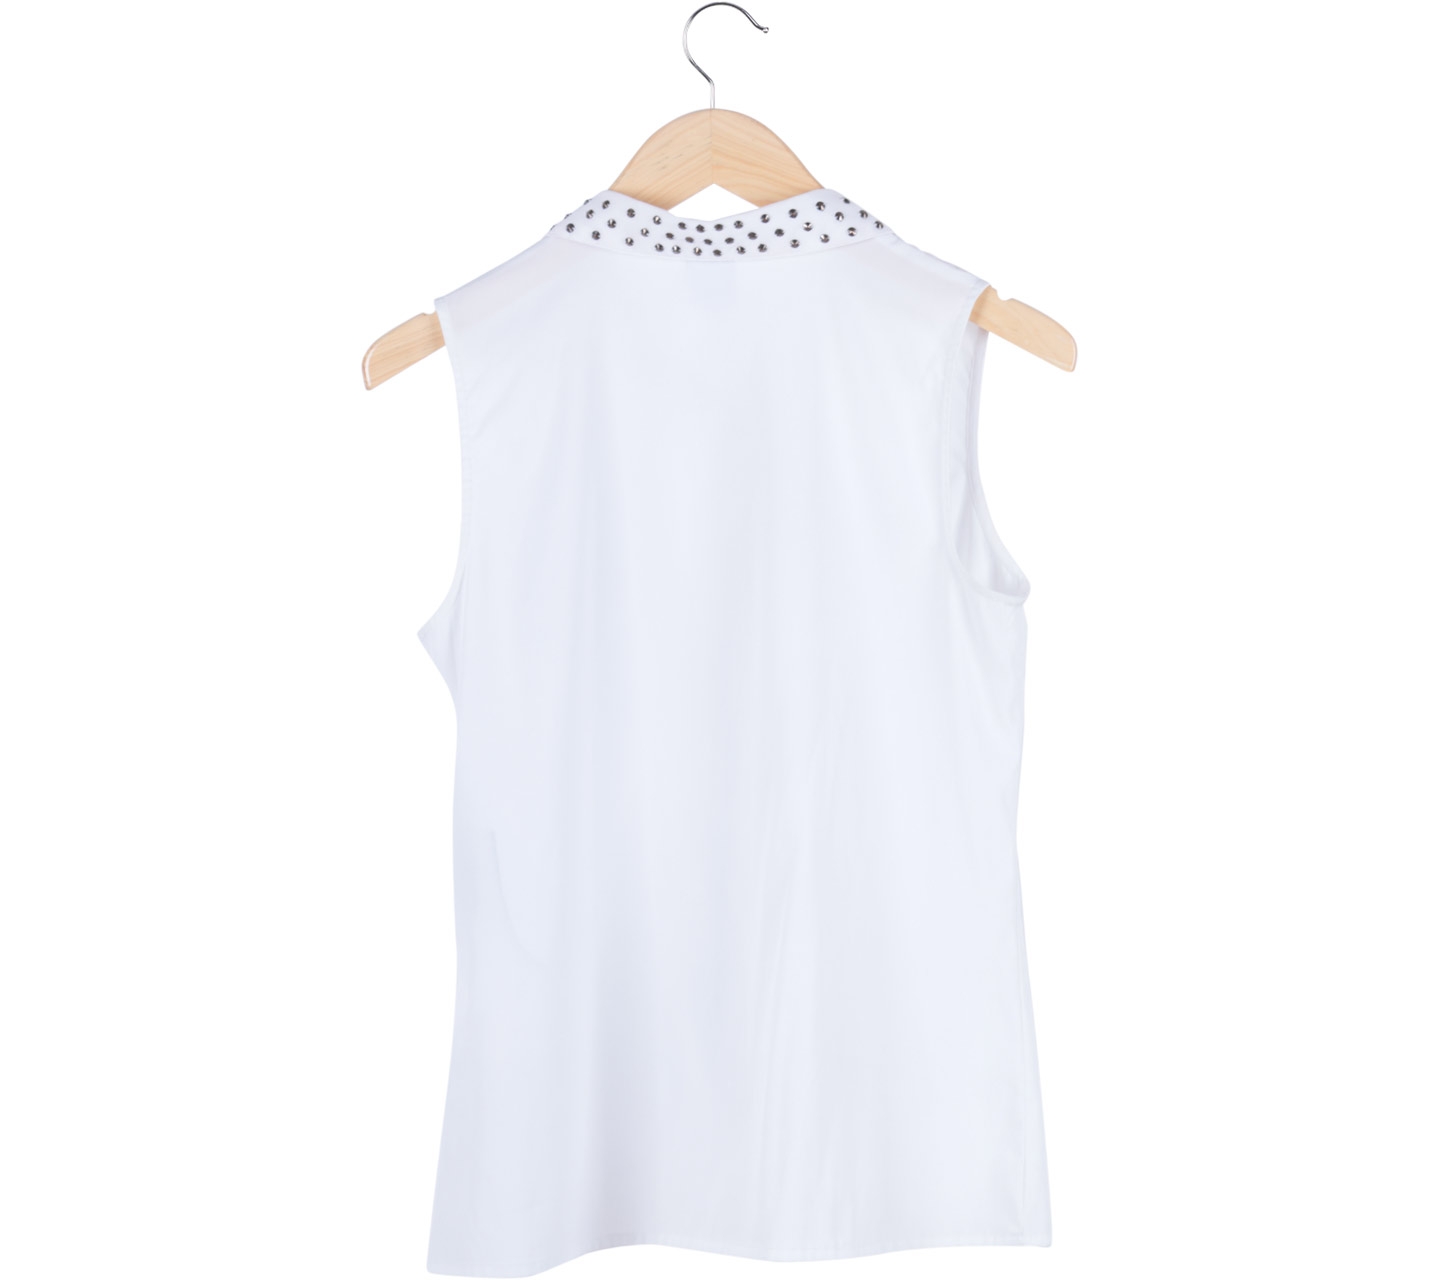 Vero Moda White Beaded Sleeveless Shirt